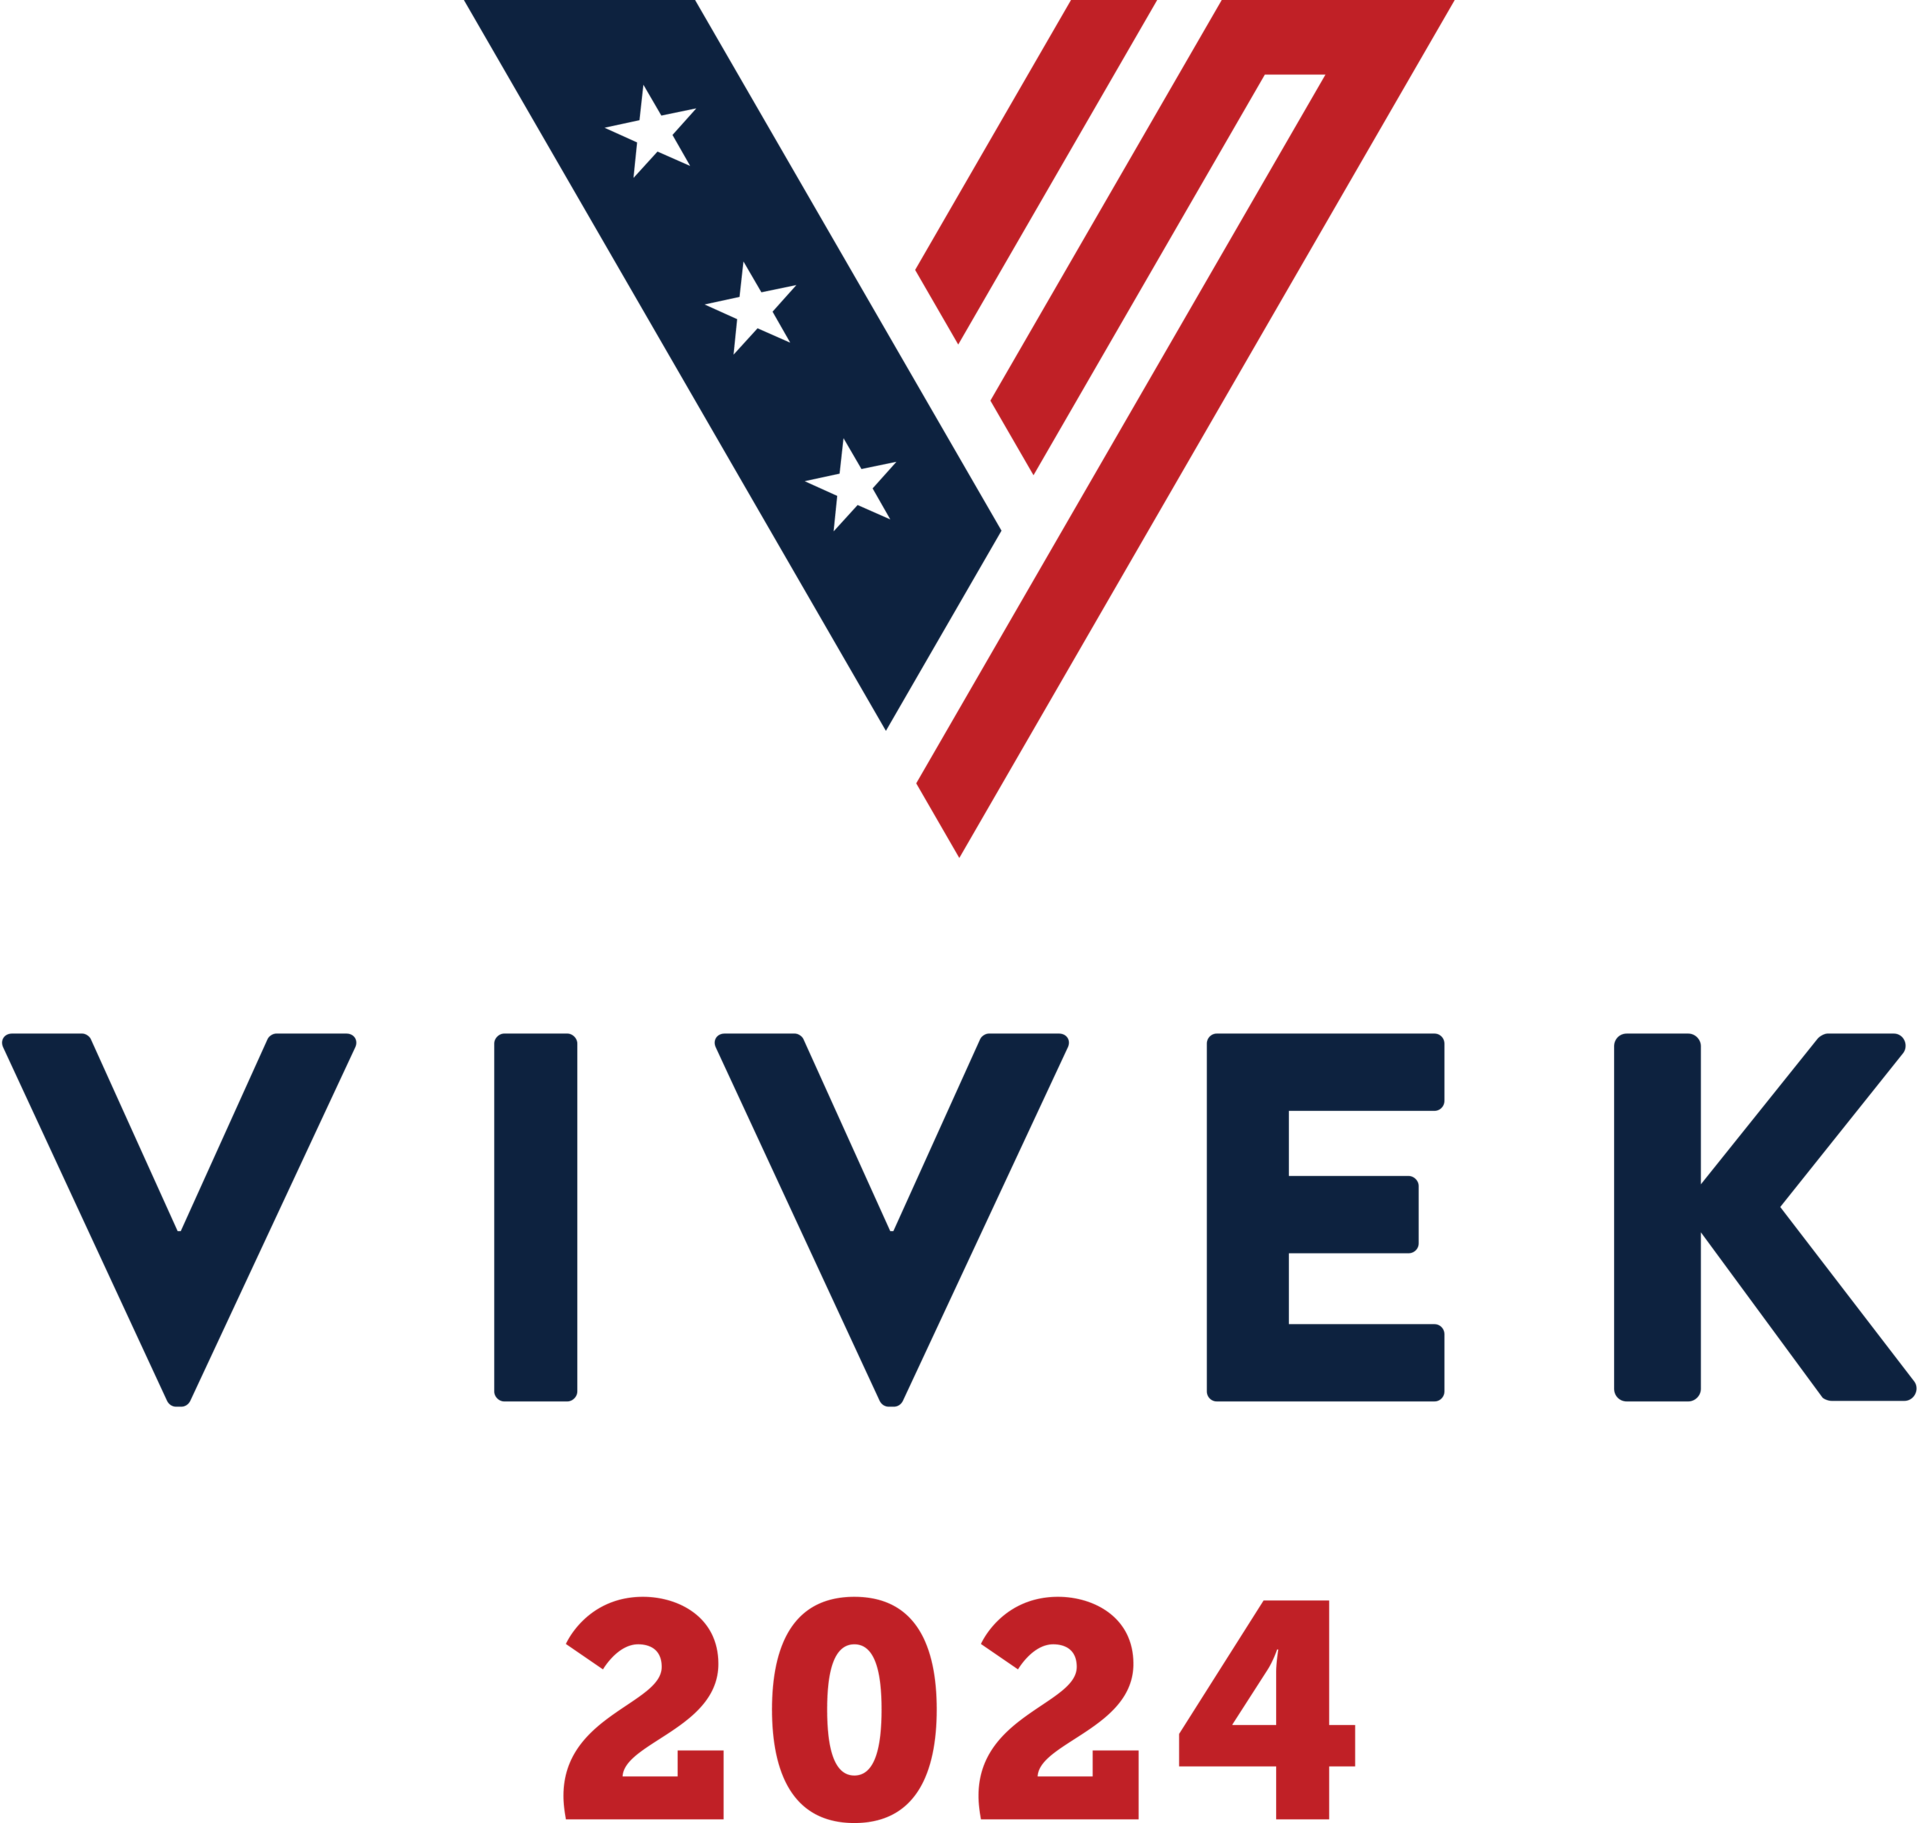 Vivek2024 logo